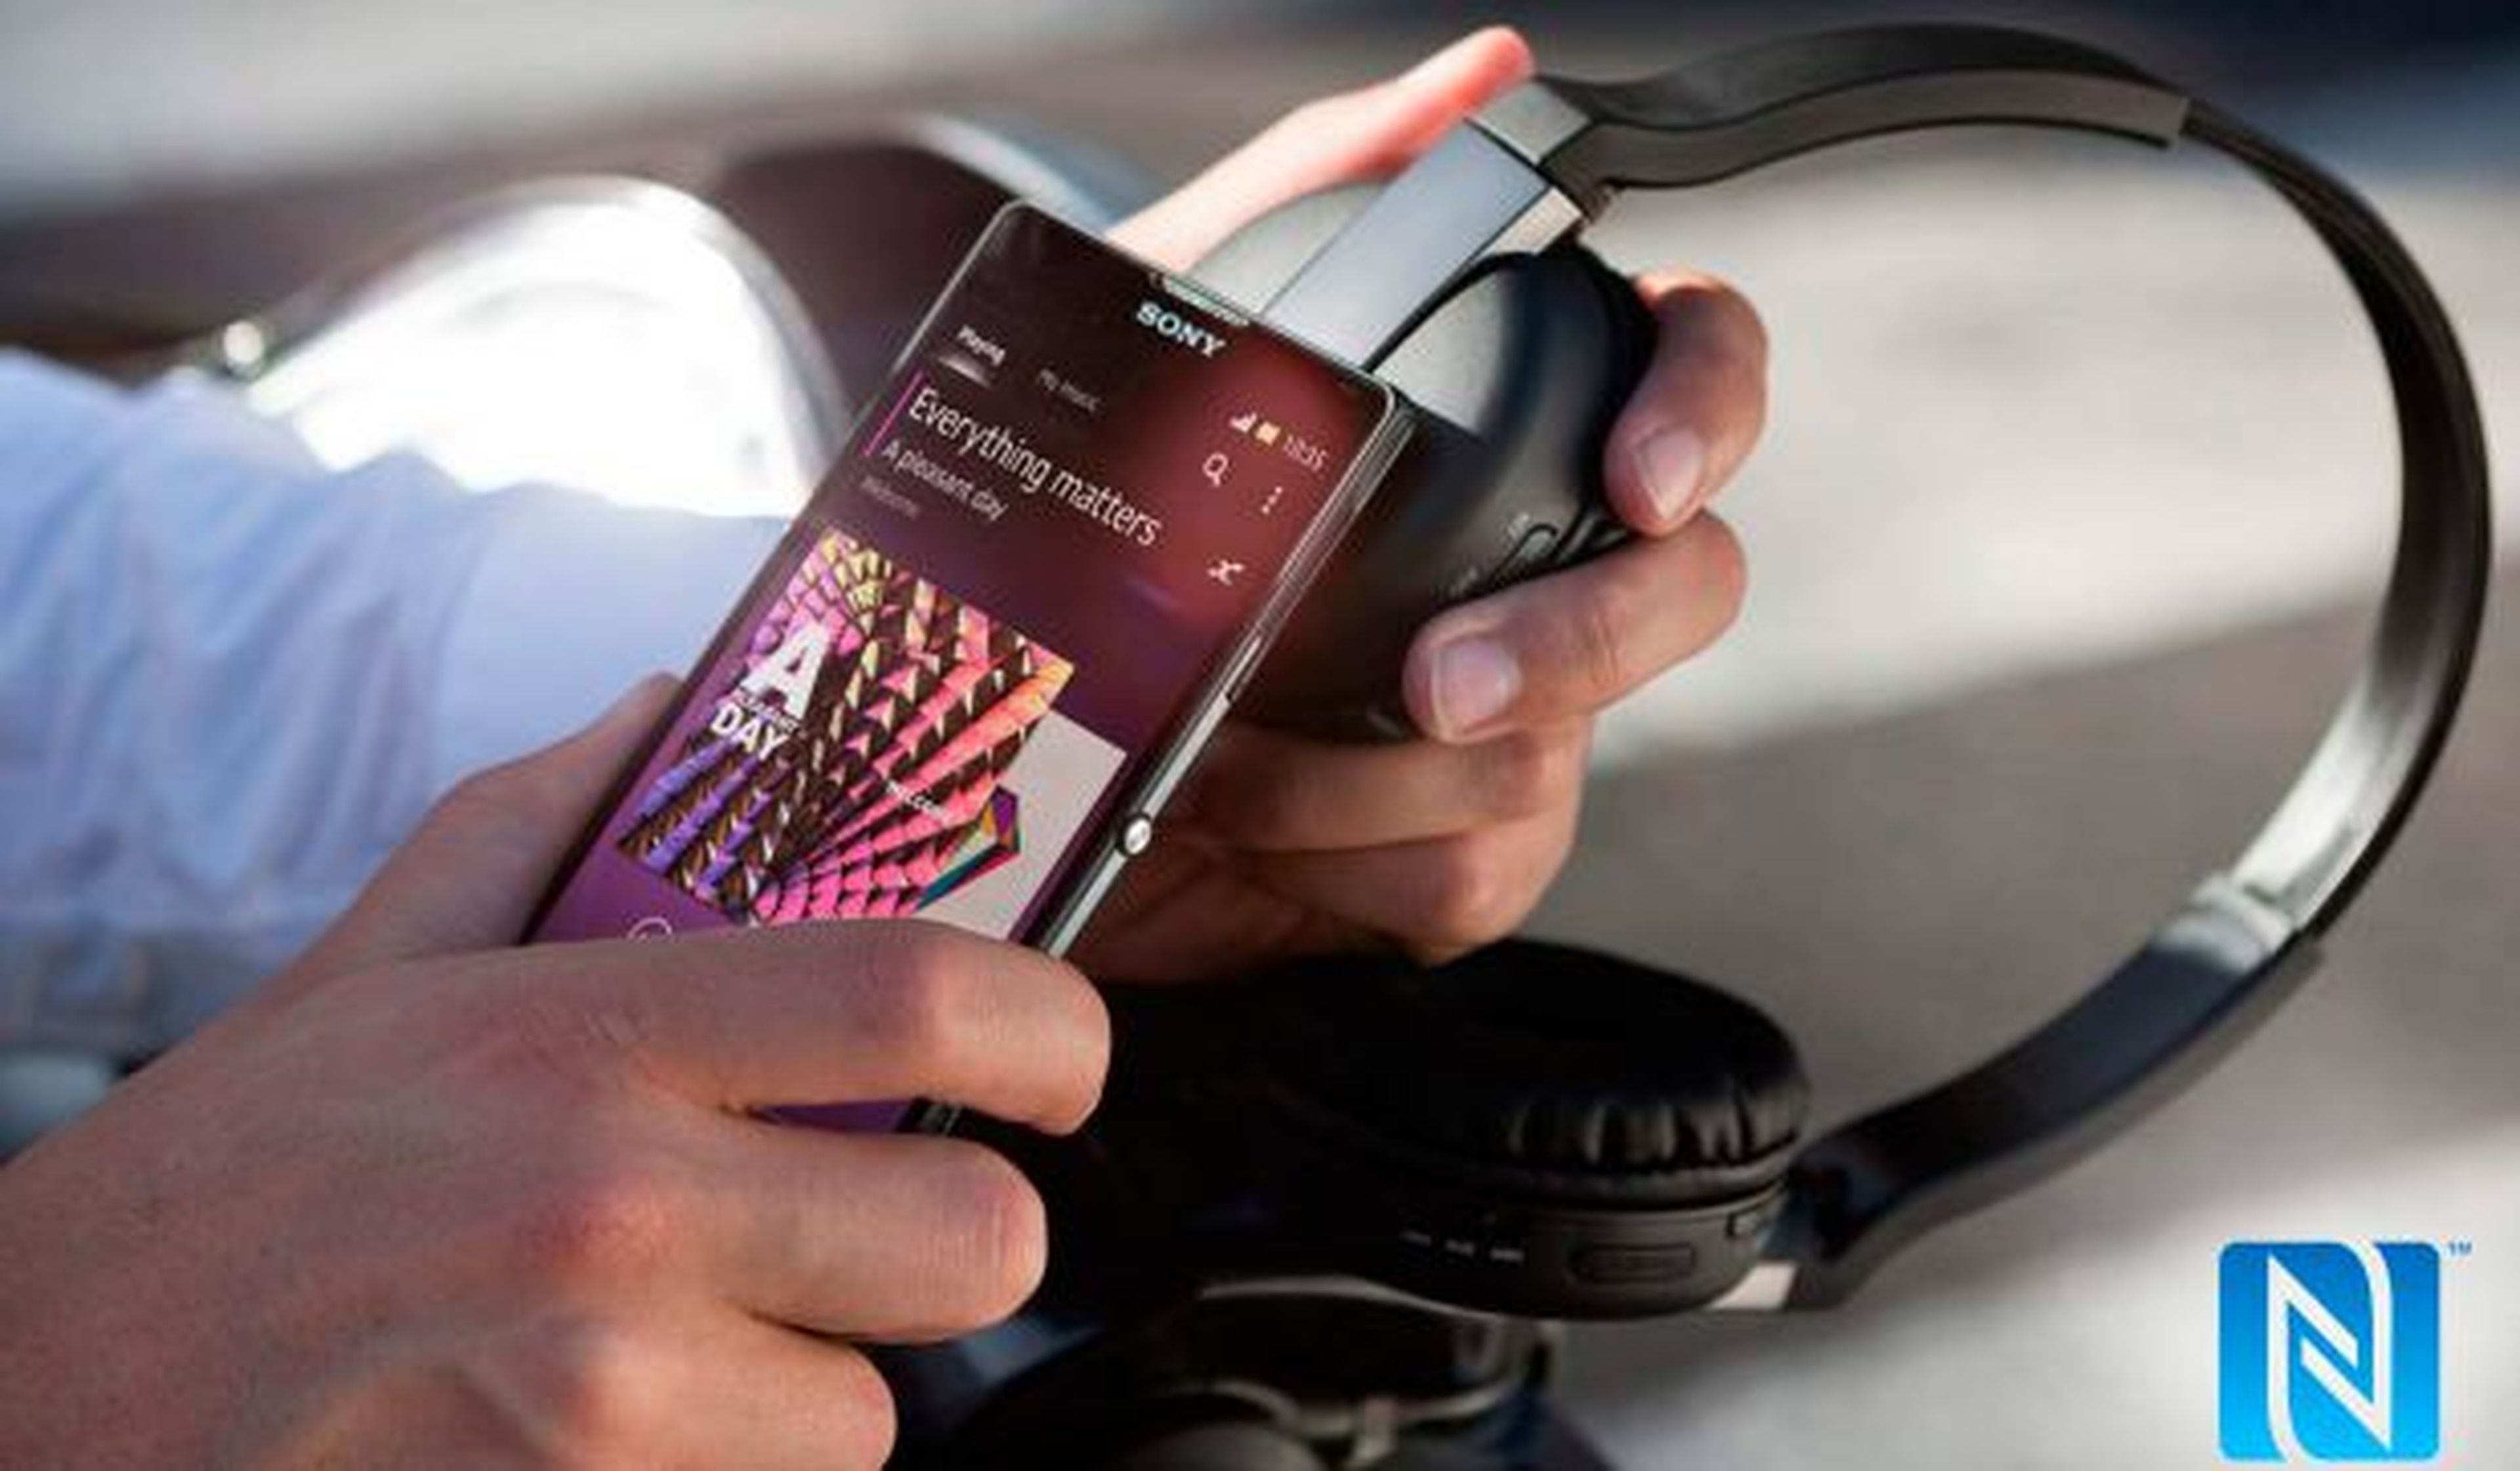 La tecnología NFC facilita la conexión entre dispositivos